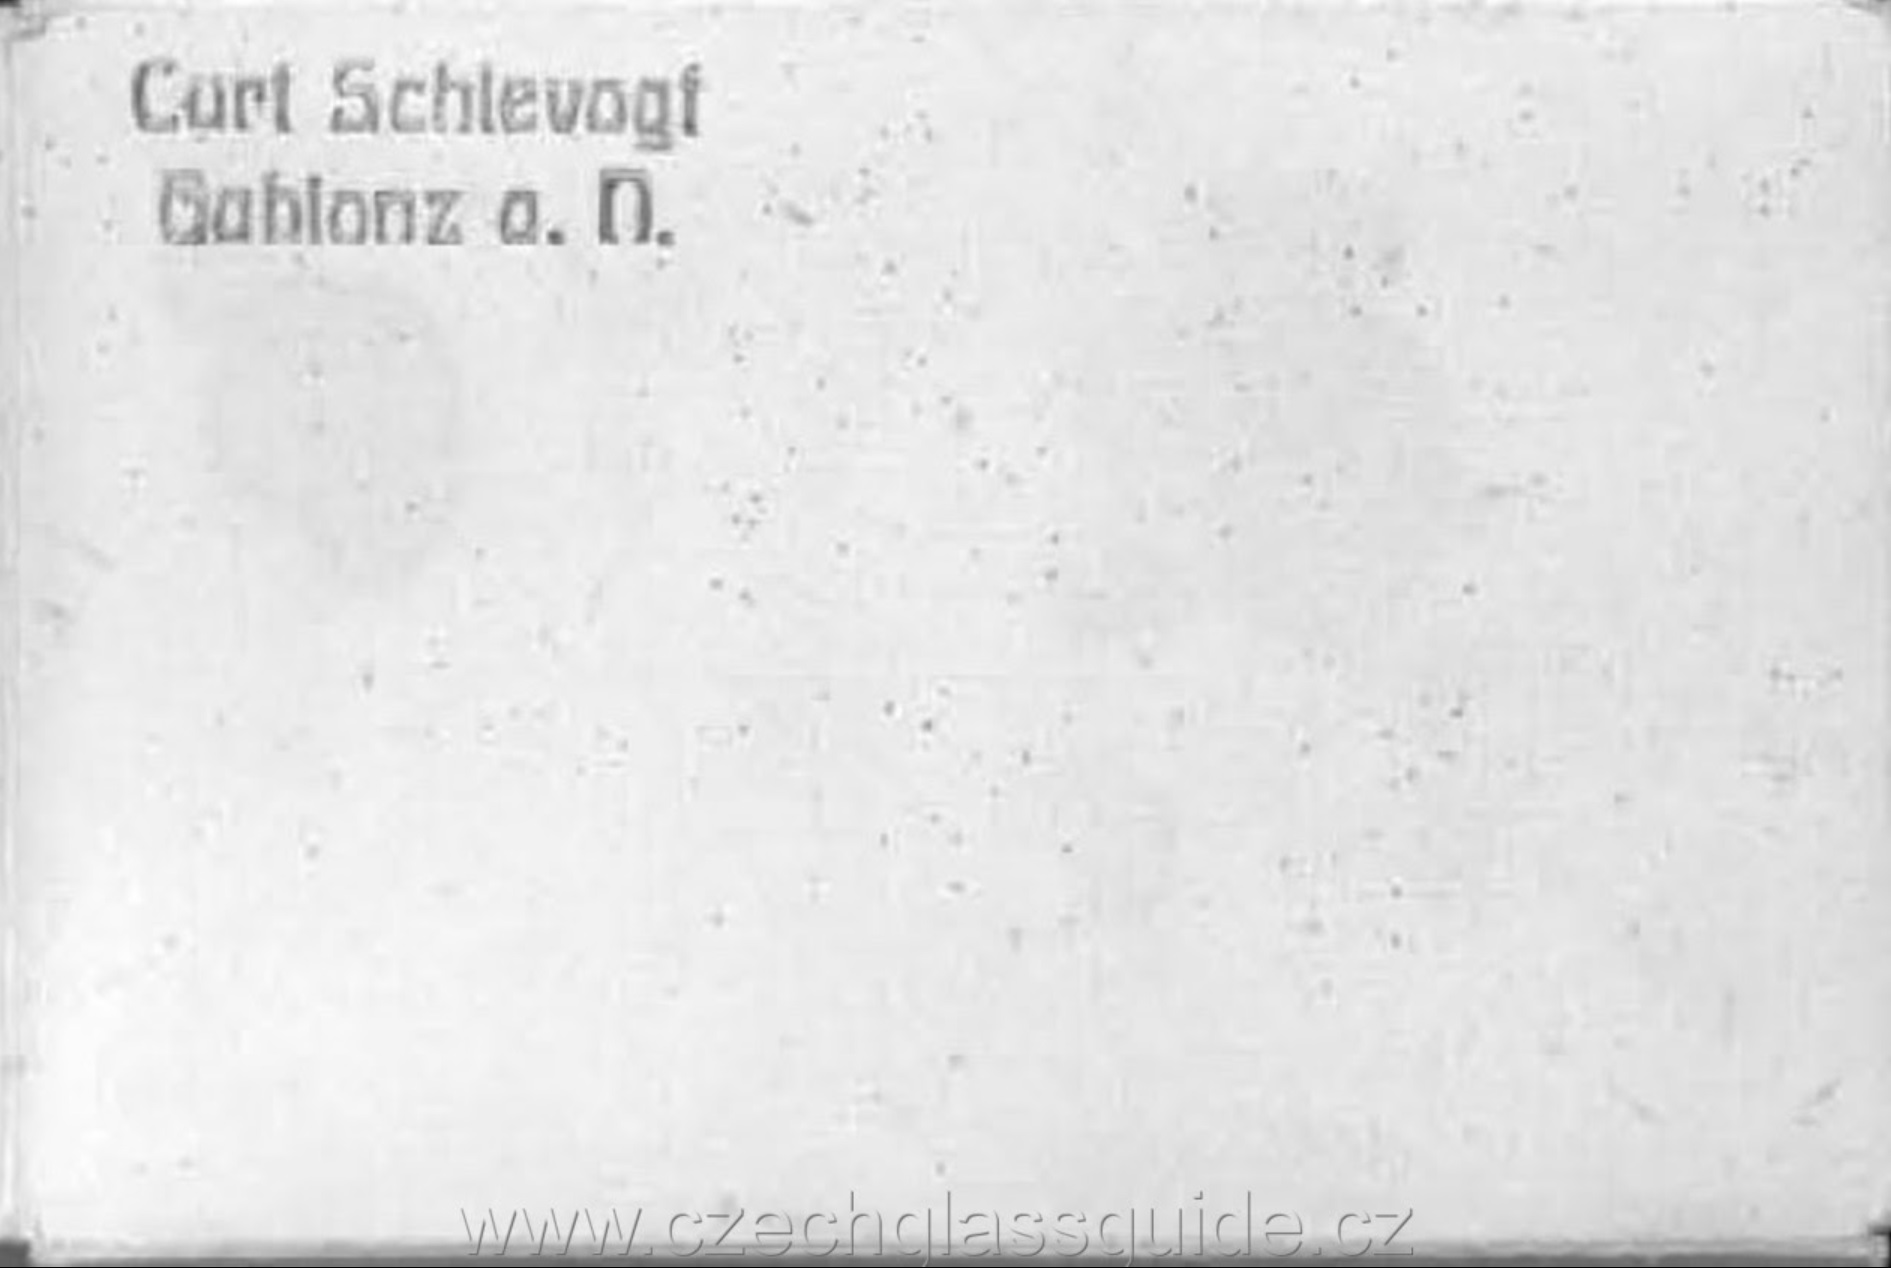 Curt Schlevogt - Ingrid - 1939